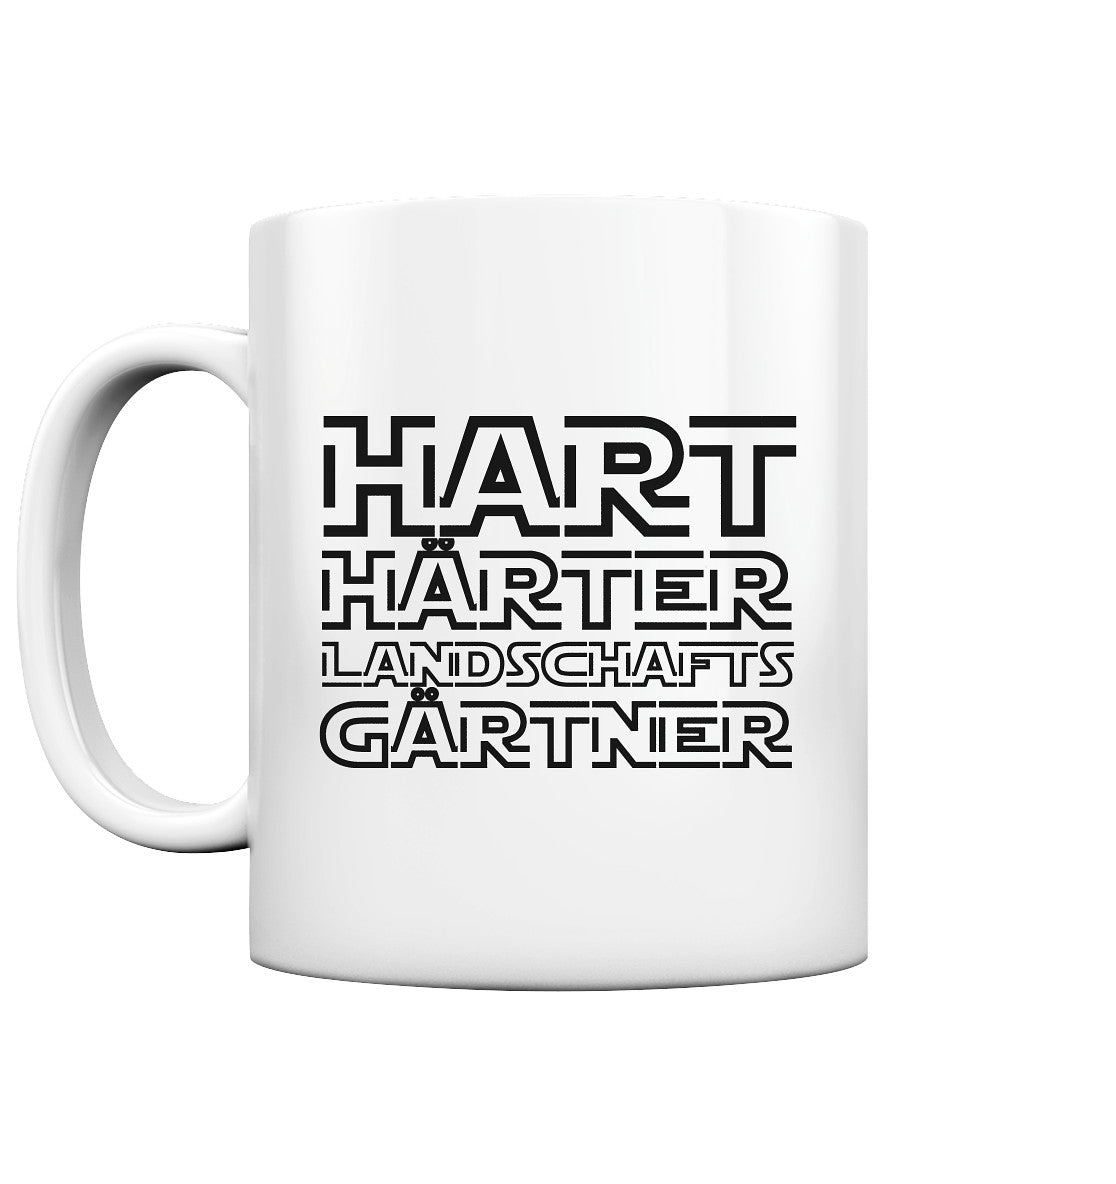 Hart, härter, Landschaftsgärtner - Tasse glossy